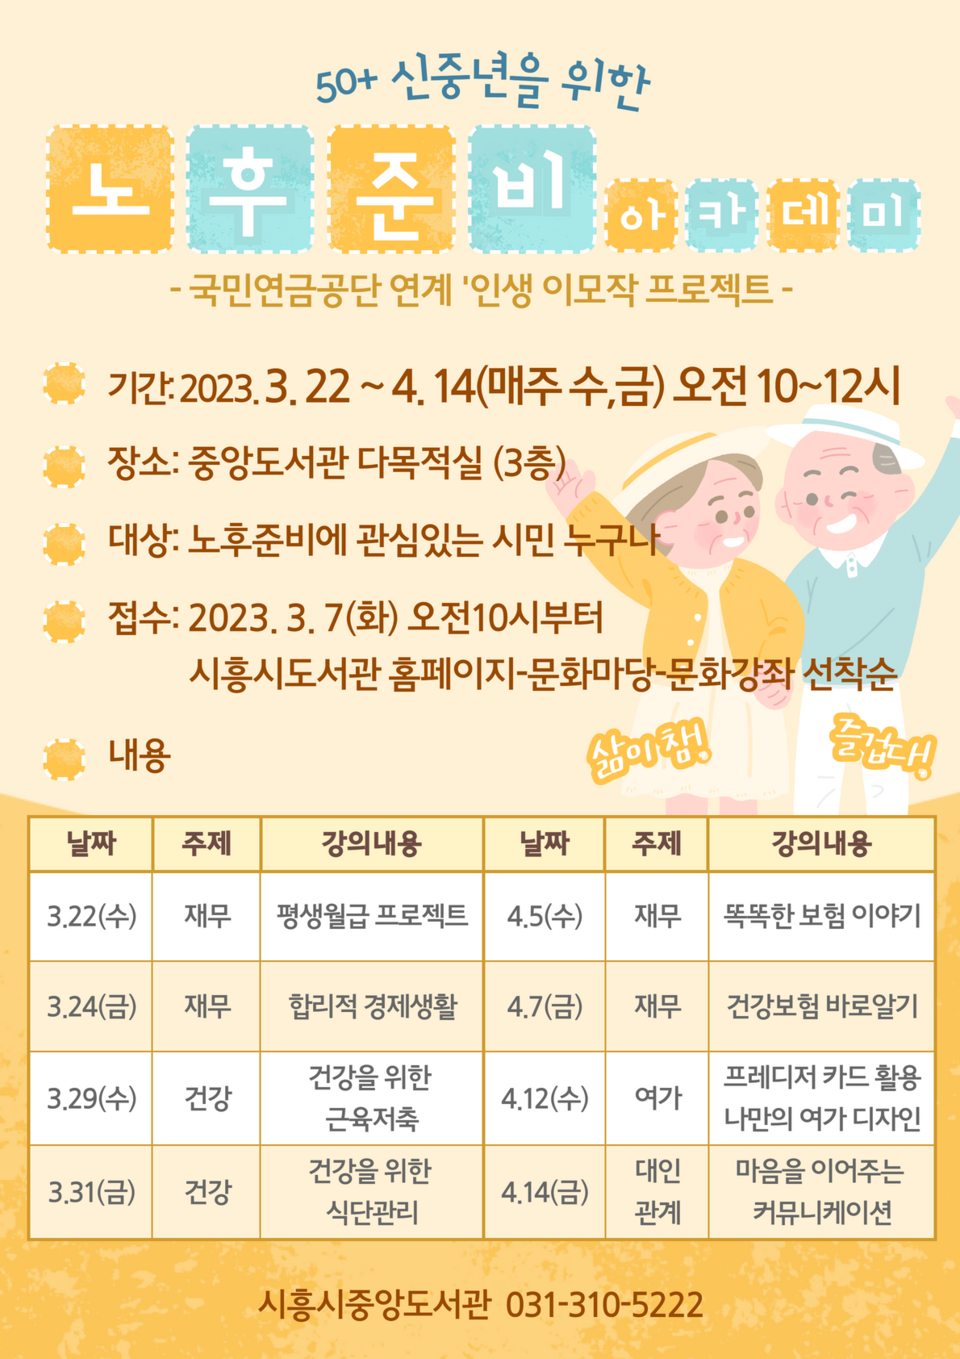 ▲ 시흥시중앙도서관, '50+ 신중년을 위한 노후준비 아카데미' 참가자 모집